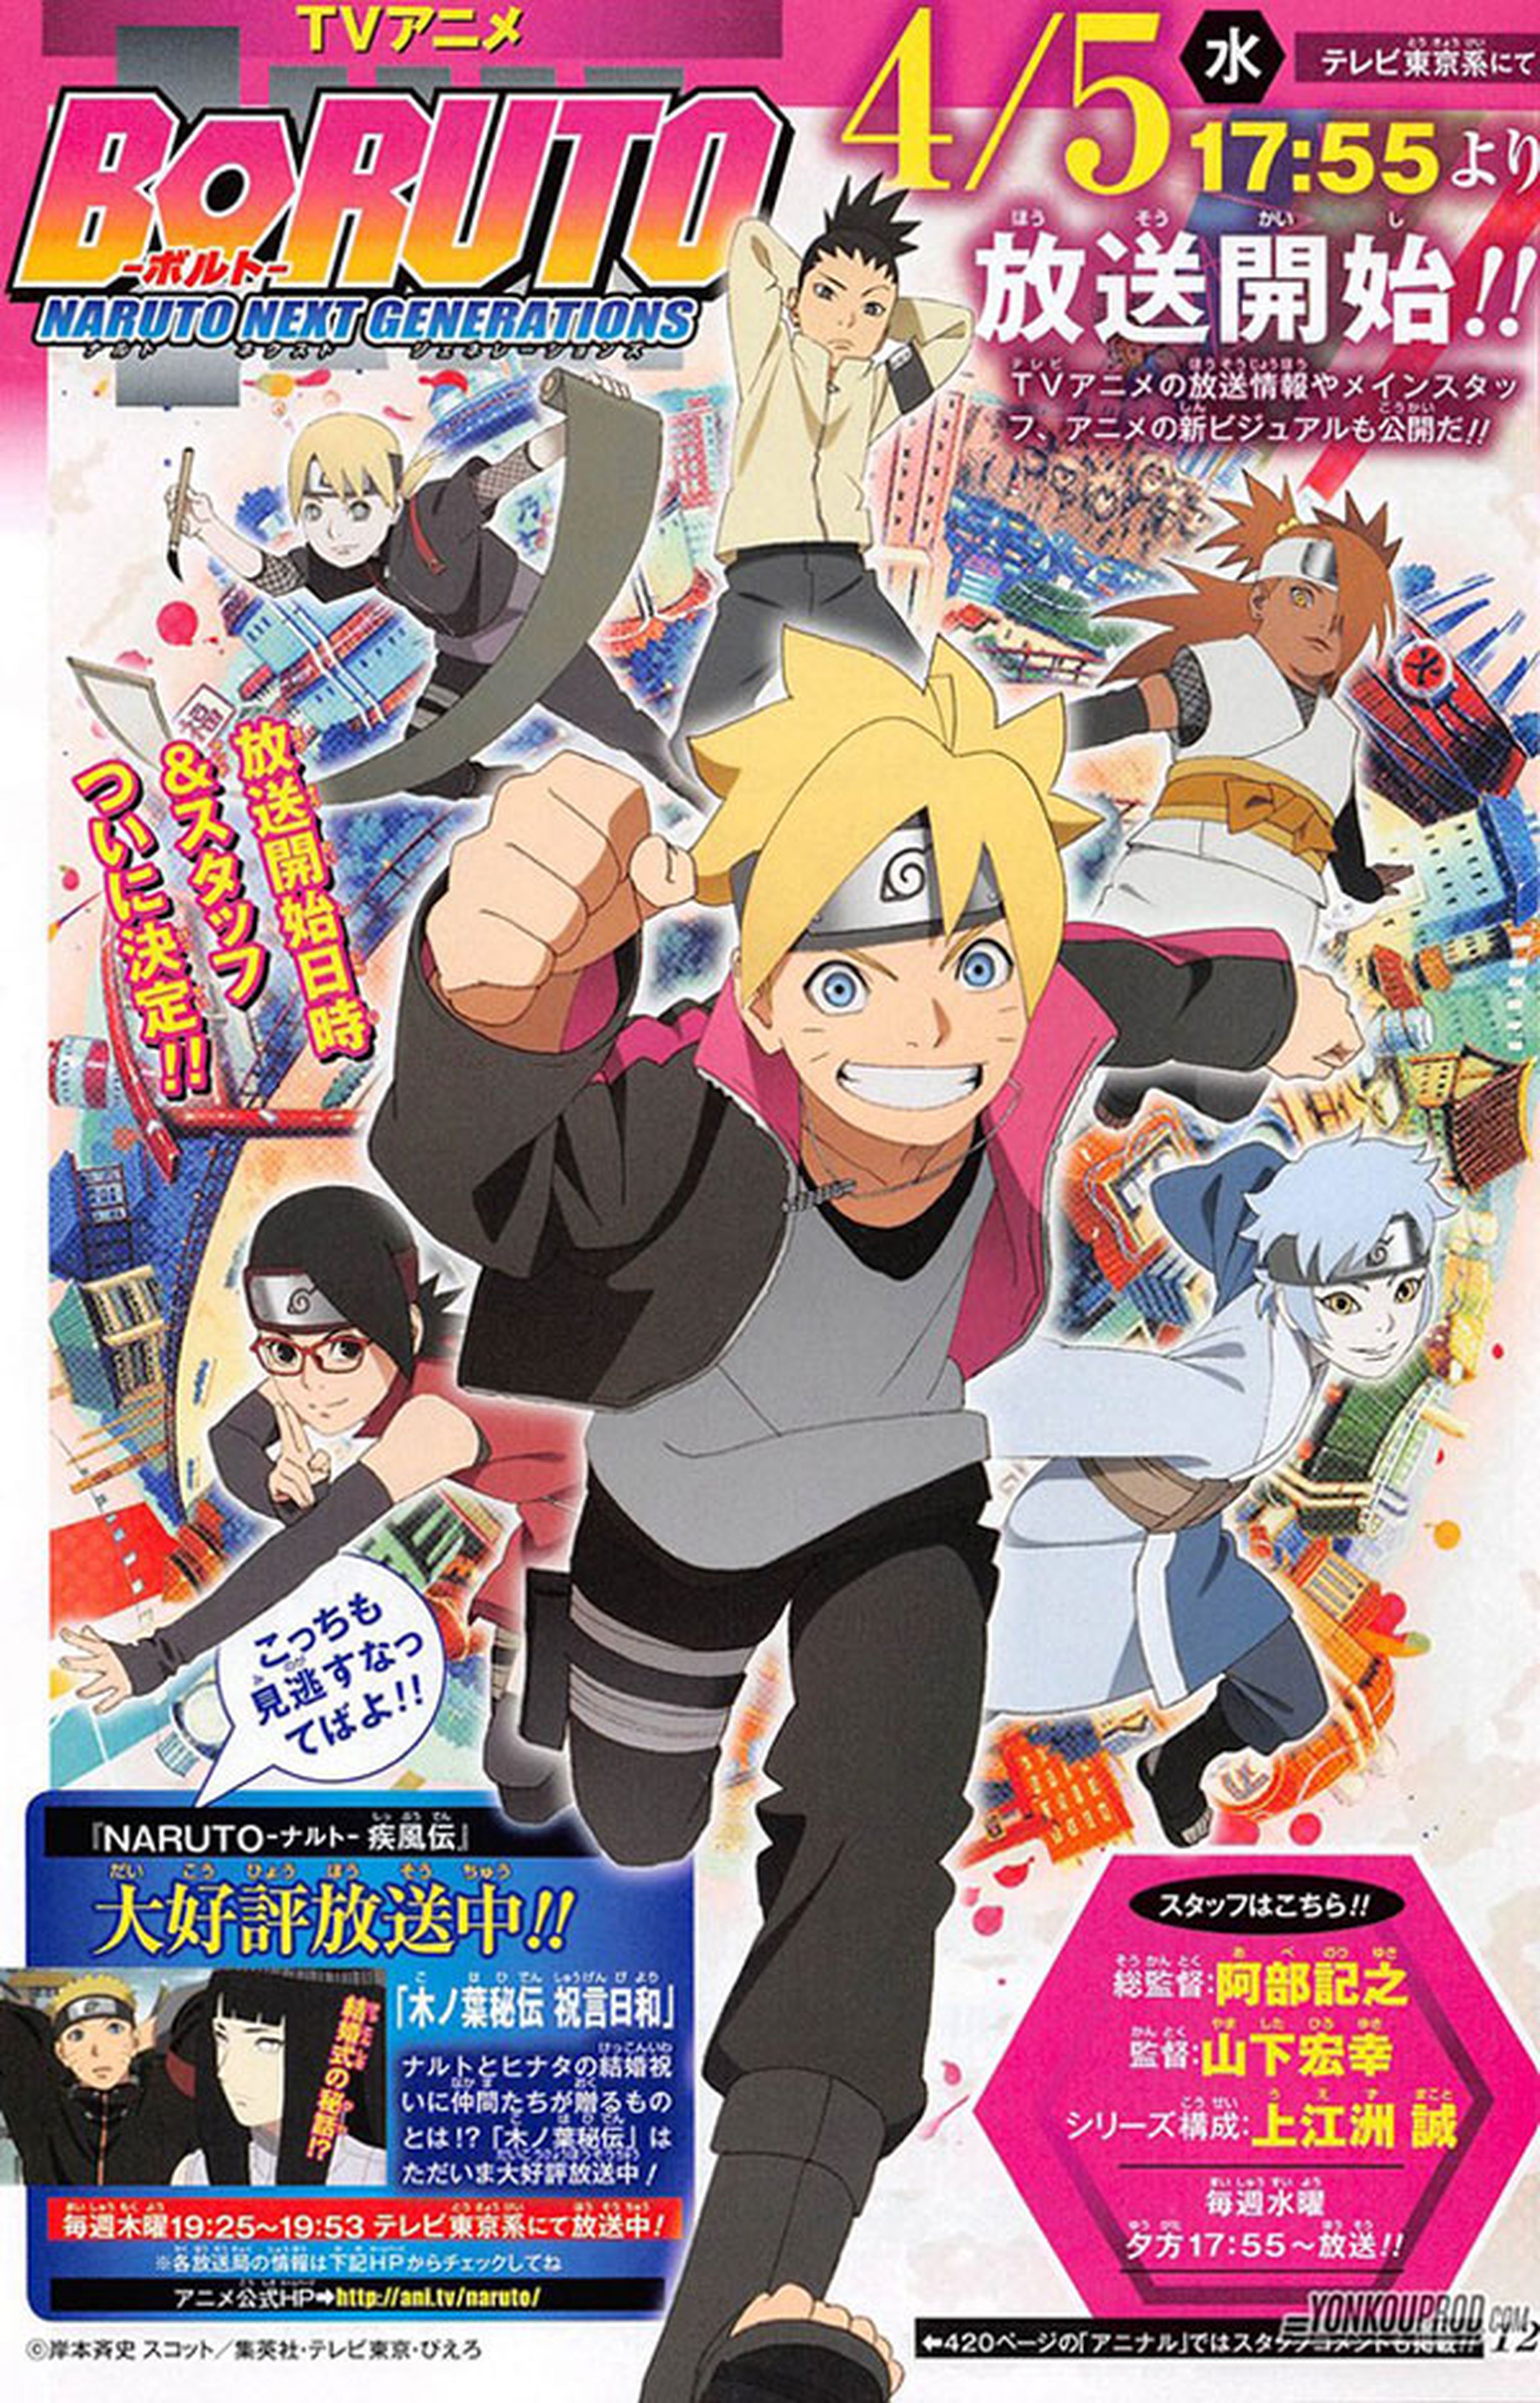 Boruto - Naruto Next Generations (7º Temporada) - 5 de Abril de 2020